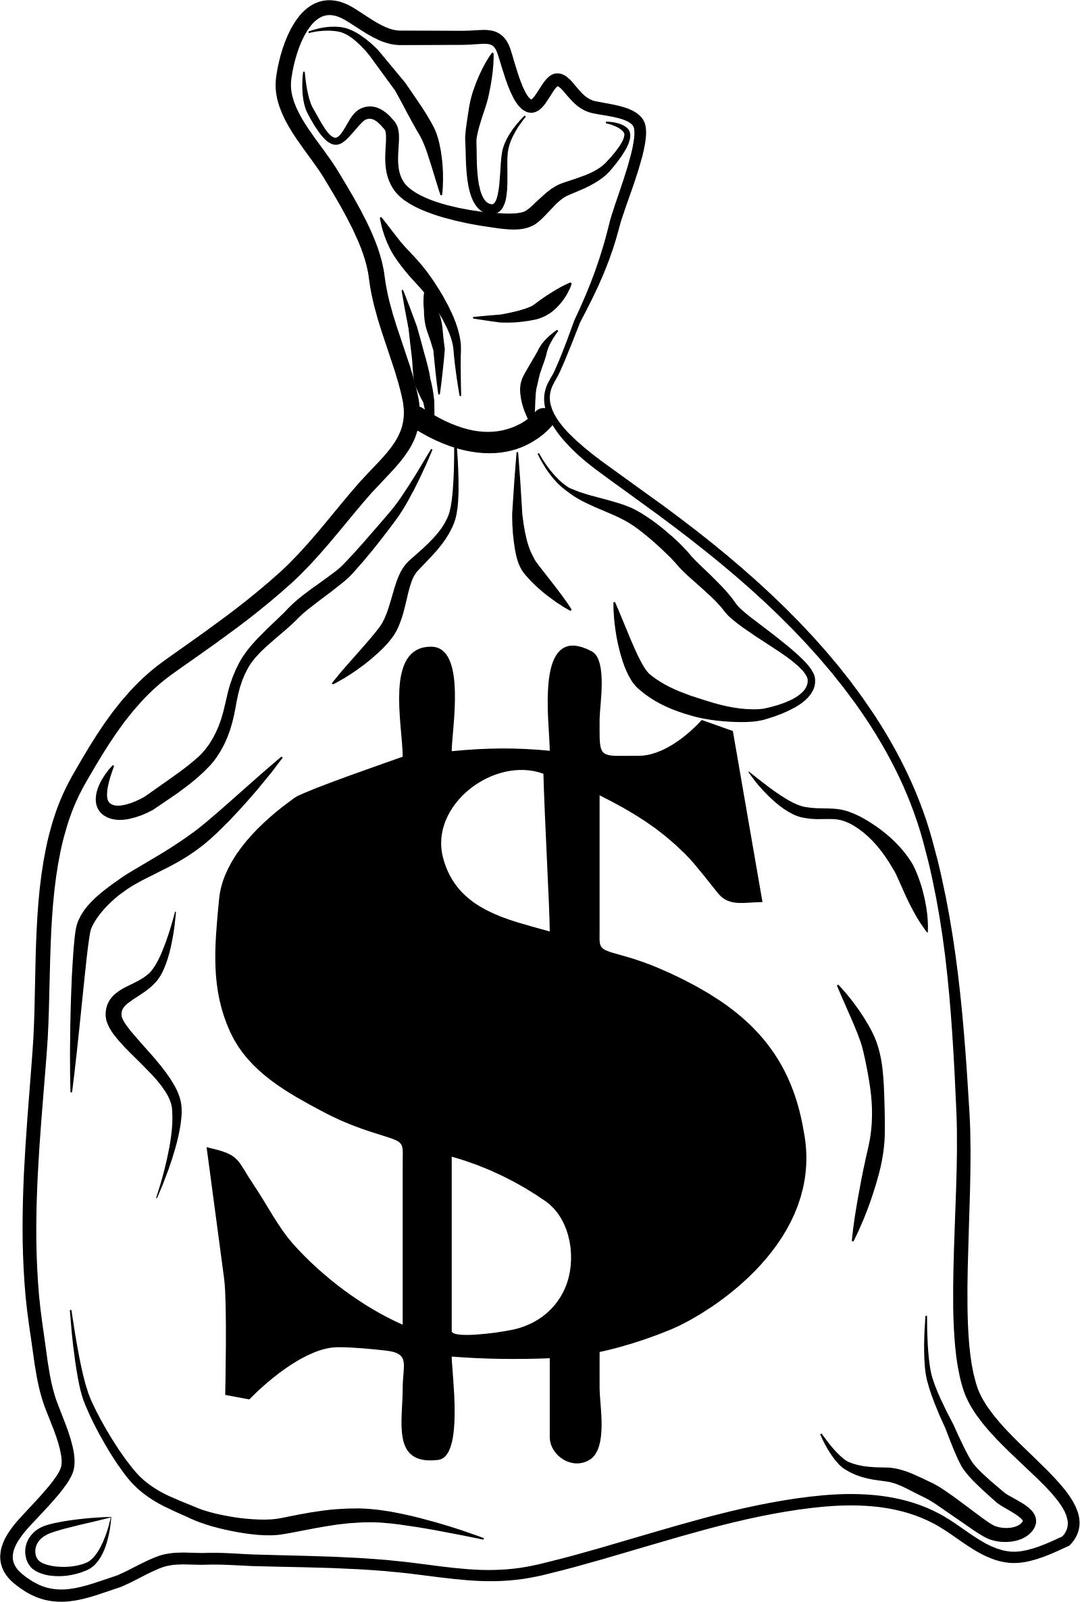 bag-o-money png transparent